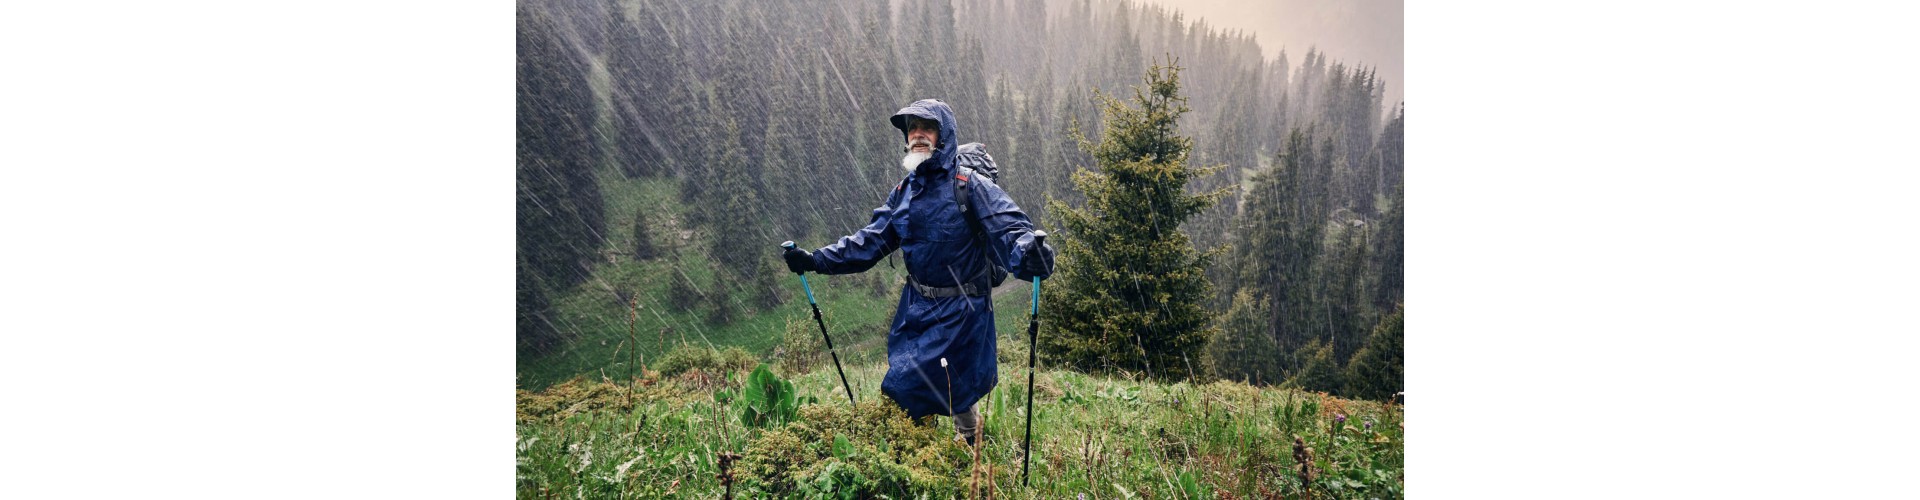 Защита от непогоды: выбор качественной дождевой одежды